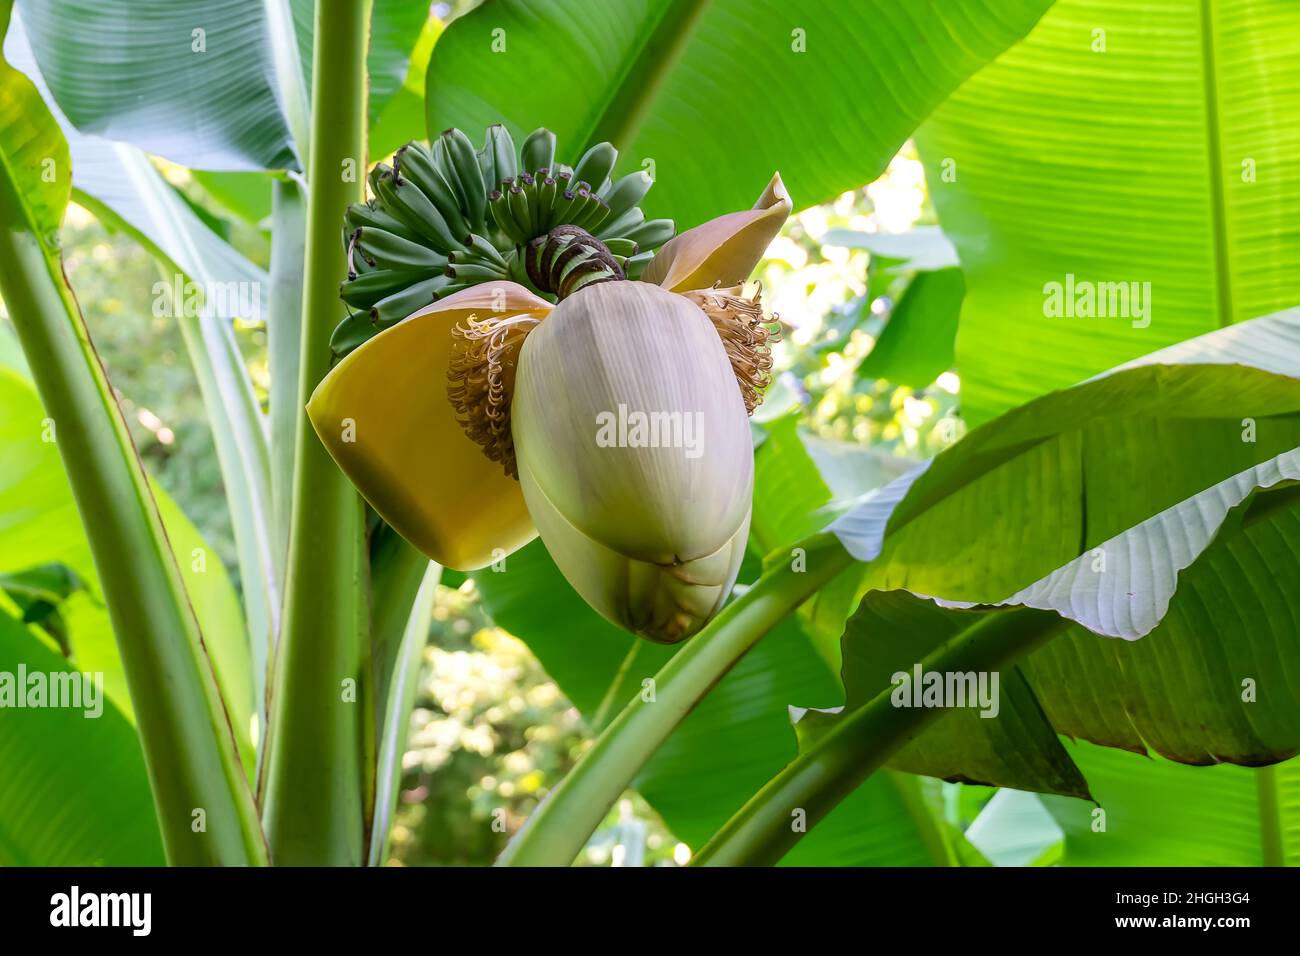 Nahaufnahme eines Bananenbaums mit einem sich öffnenden Blütenstand und kleinen grünen Bananenfrüchten am Stamm. Stockfoto